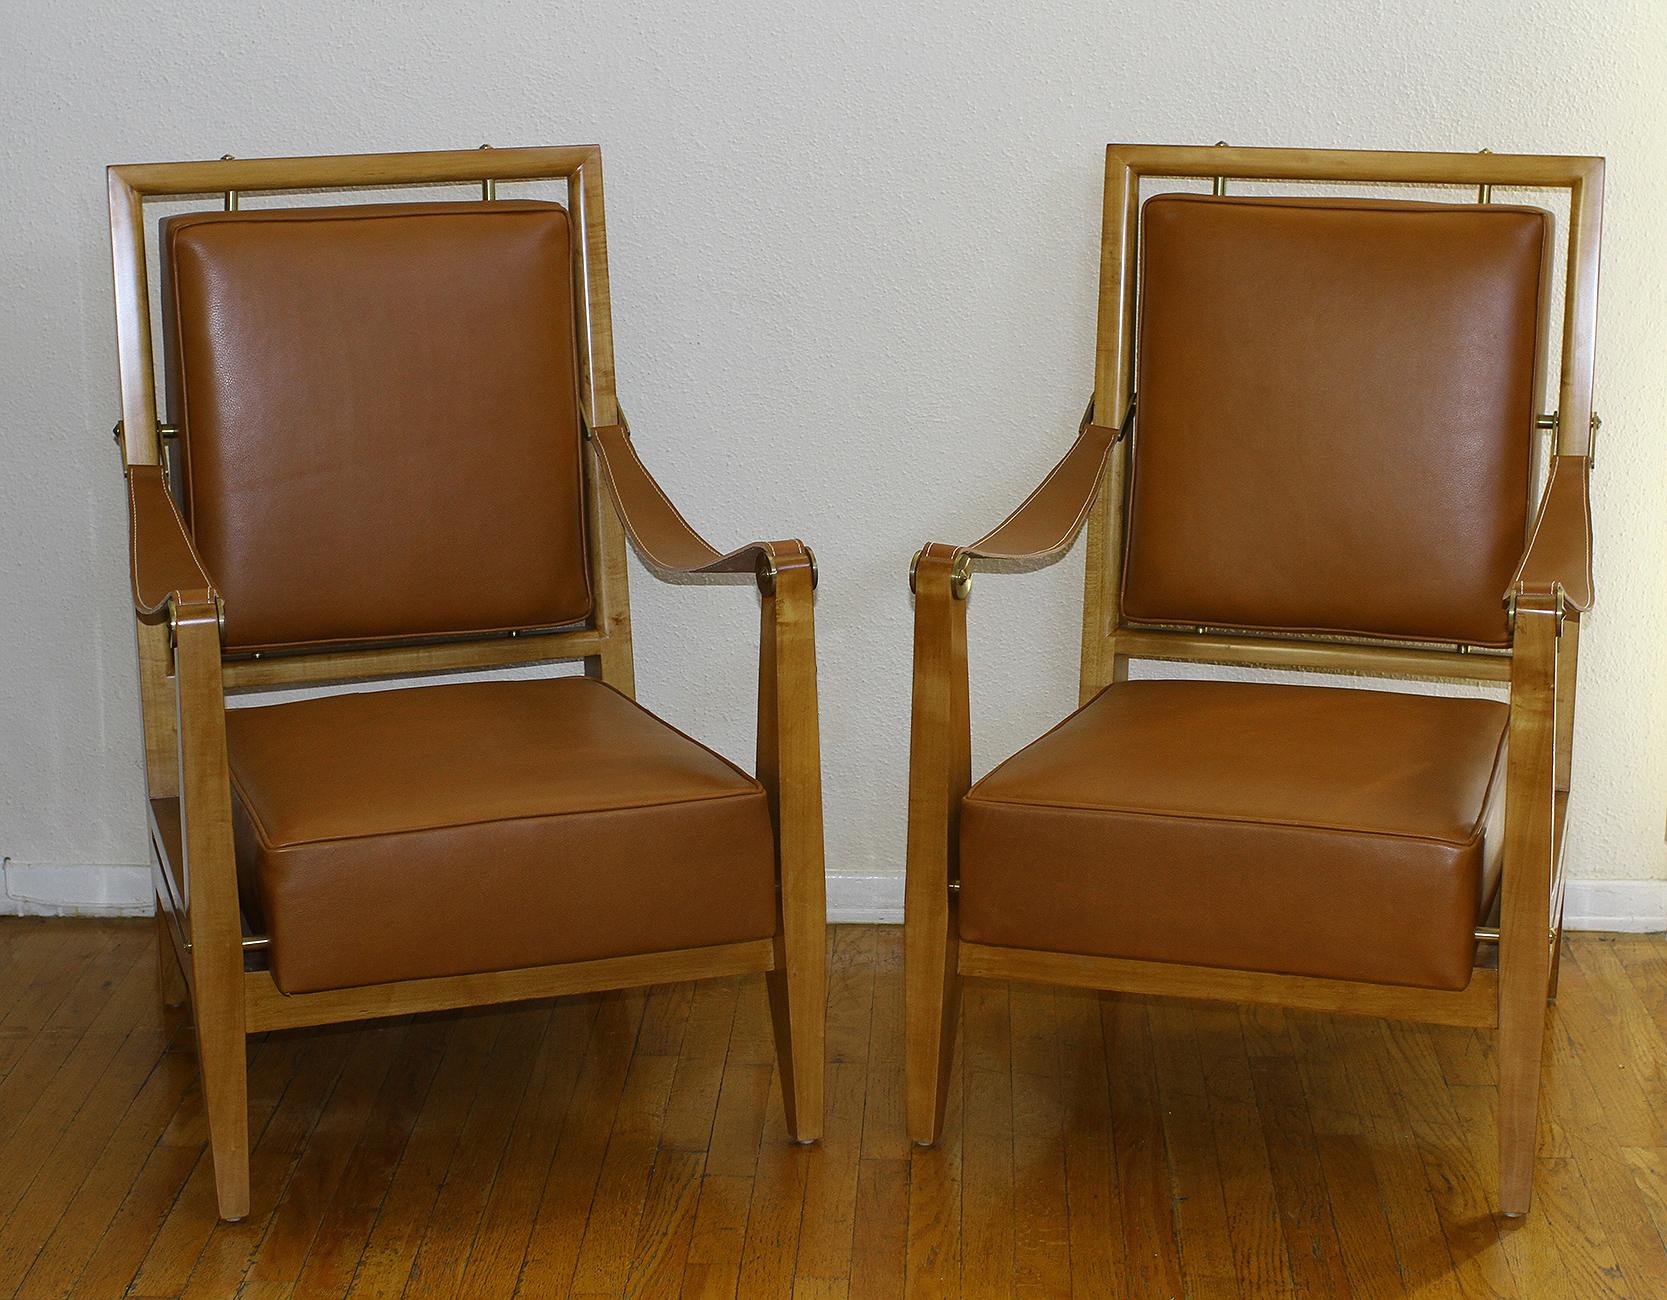 MAXIME OLD (1910 - 1991)

Paire de chaises provenant de l'hôtel Marhaba au Maroc, France 1953

Exceptionnelle et extrêmement rare paire de chaises Maxime Old provenant de l'hôtel Marhaba au Maroc.

Les chaises ont été fabriquées par Maxime Old en